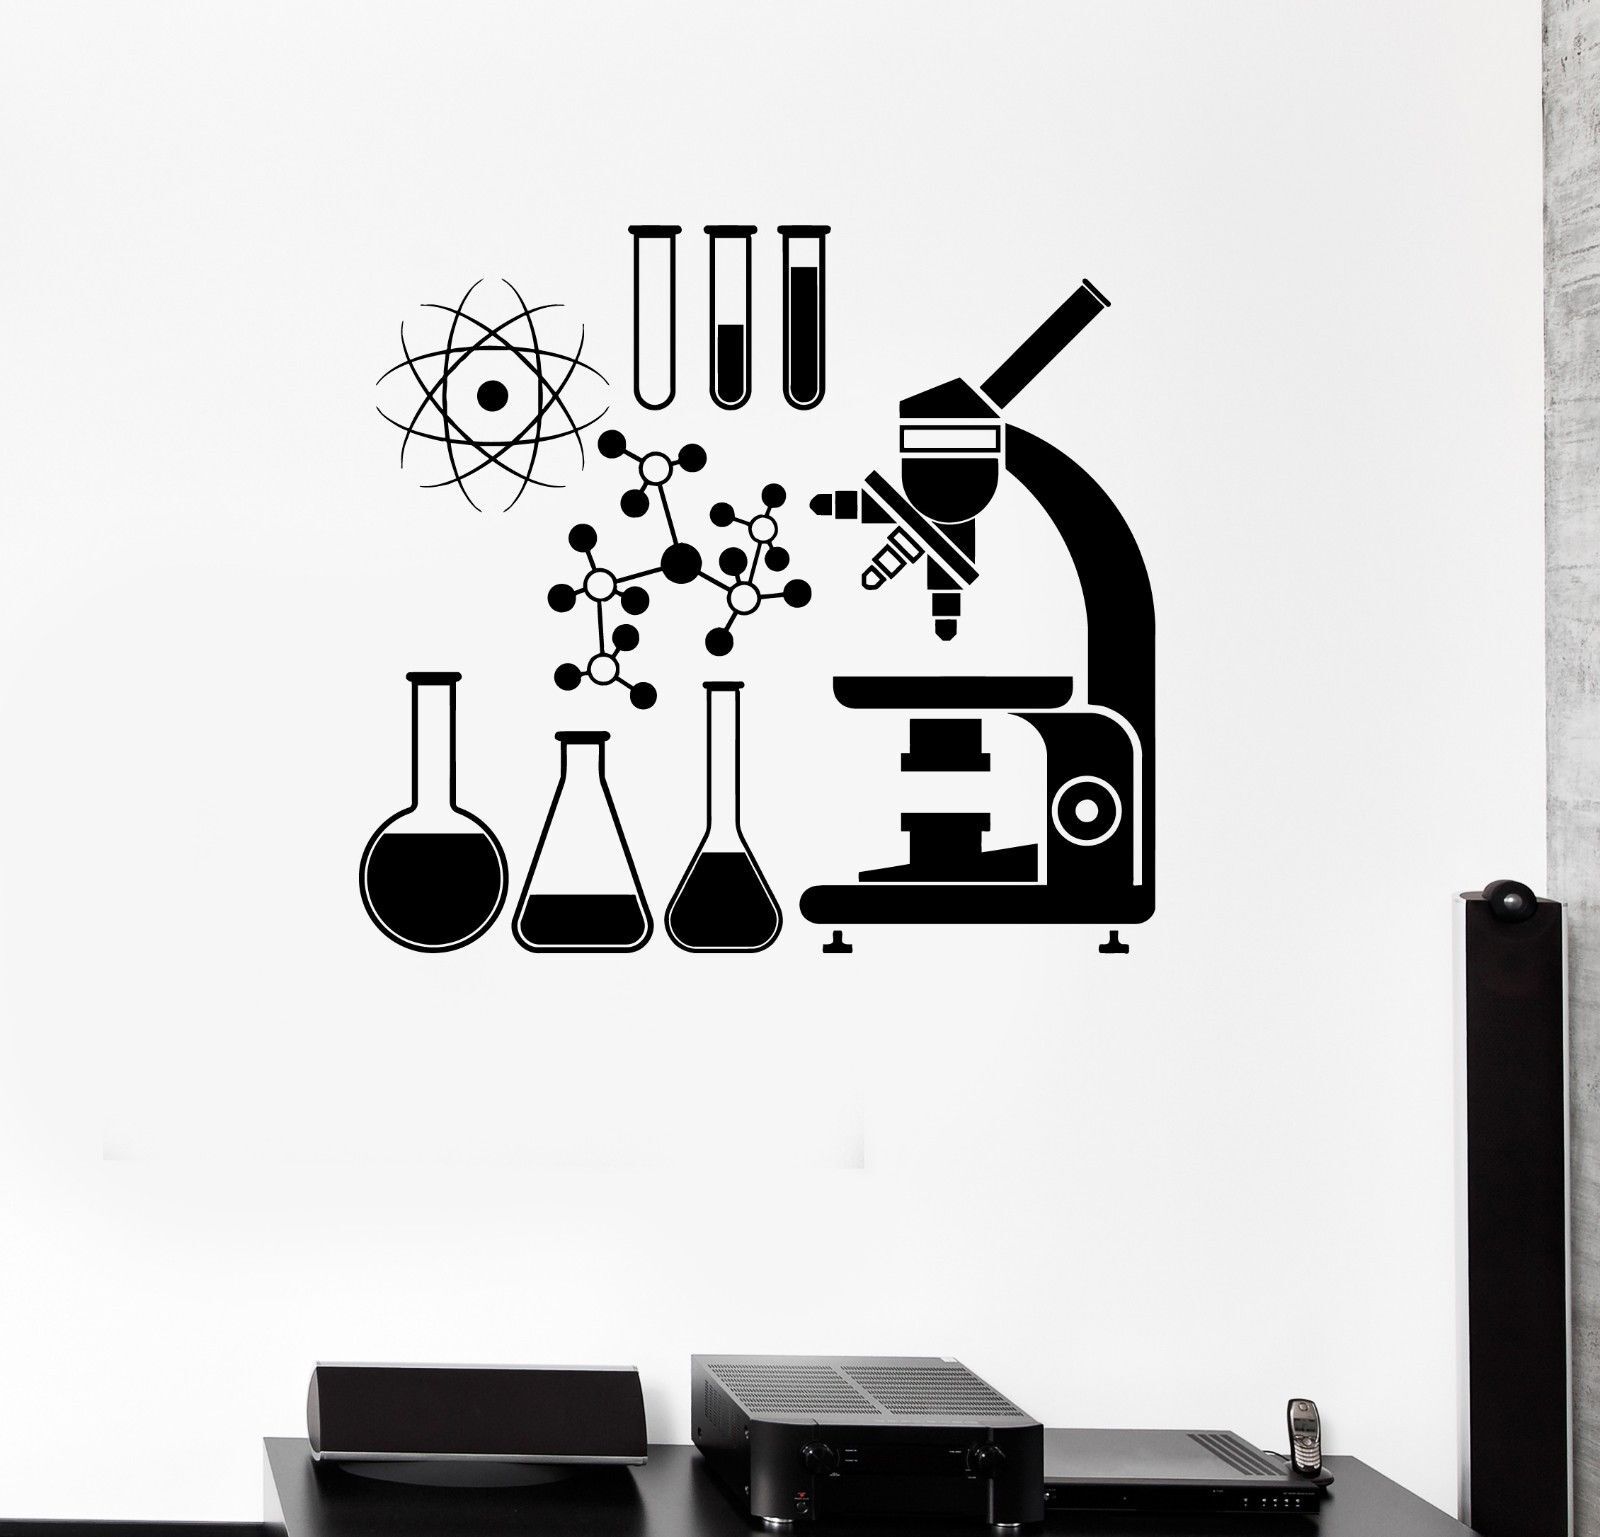 Роспись стен в кабинете химии